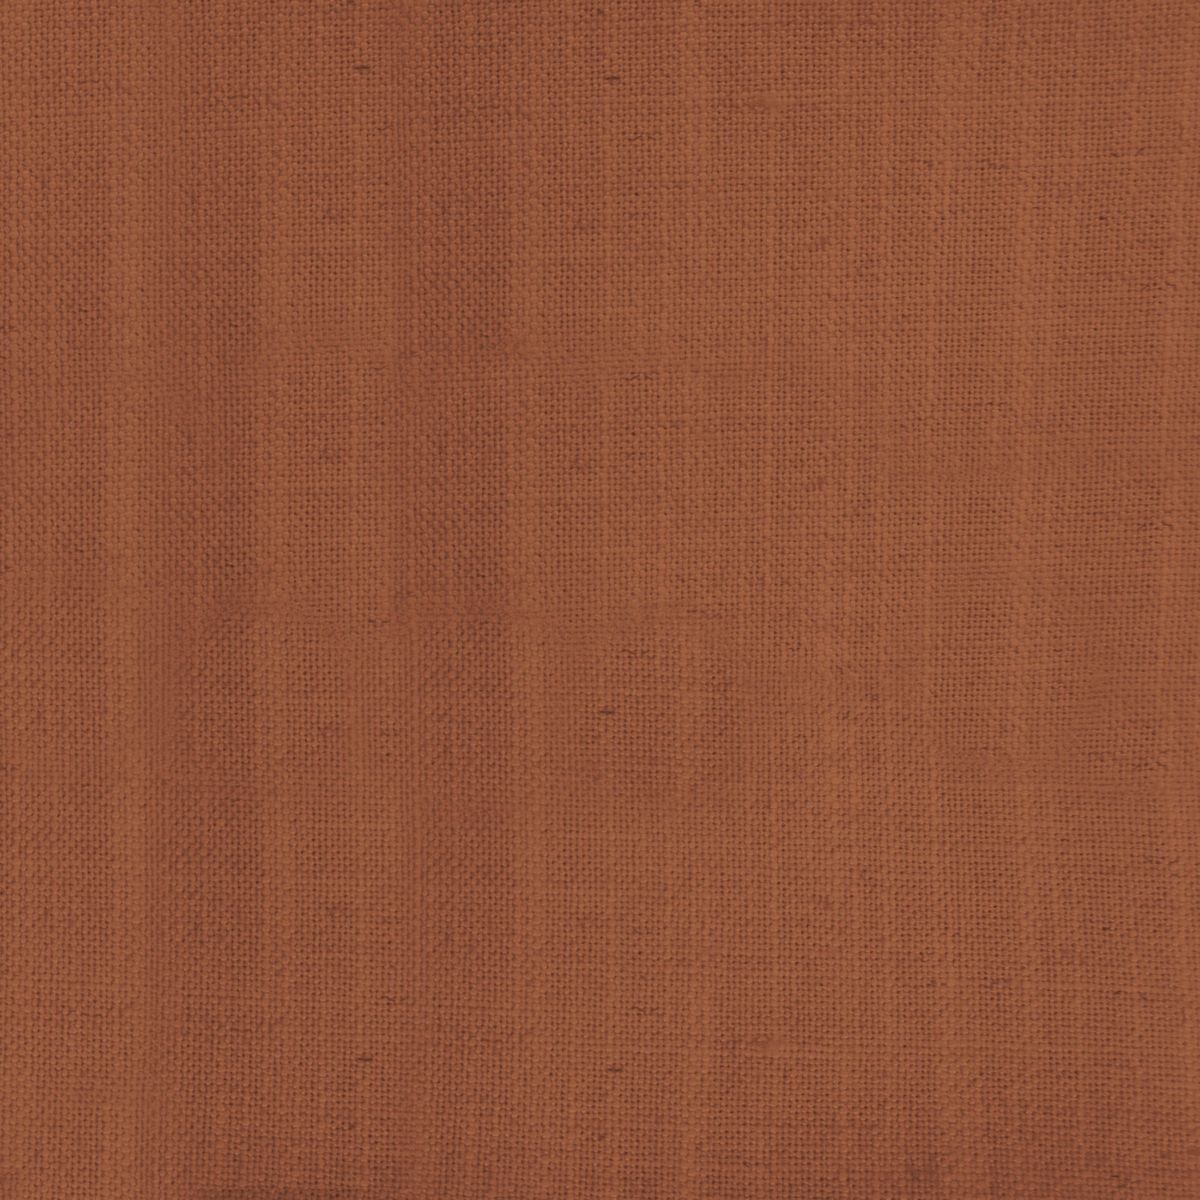 Tivoli Rust Fabric by Voyage Maison